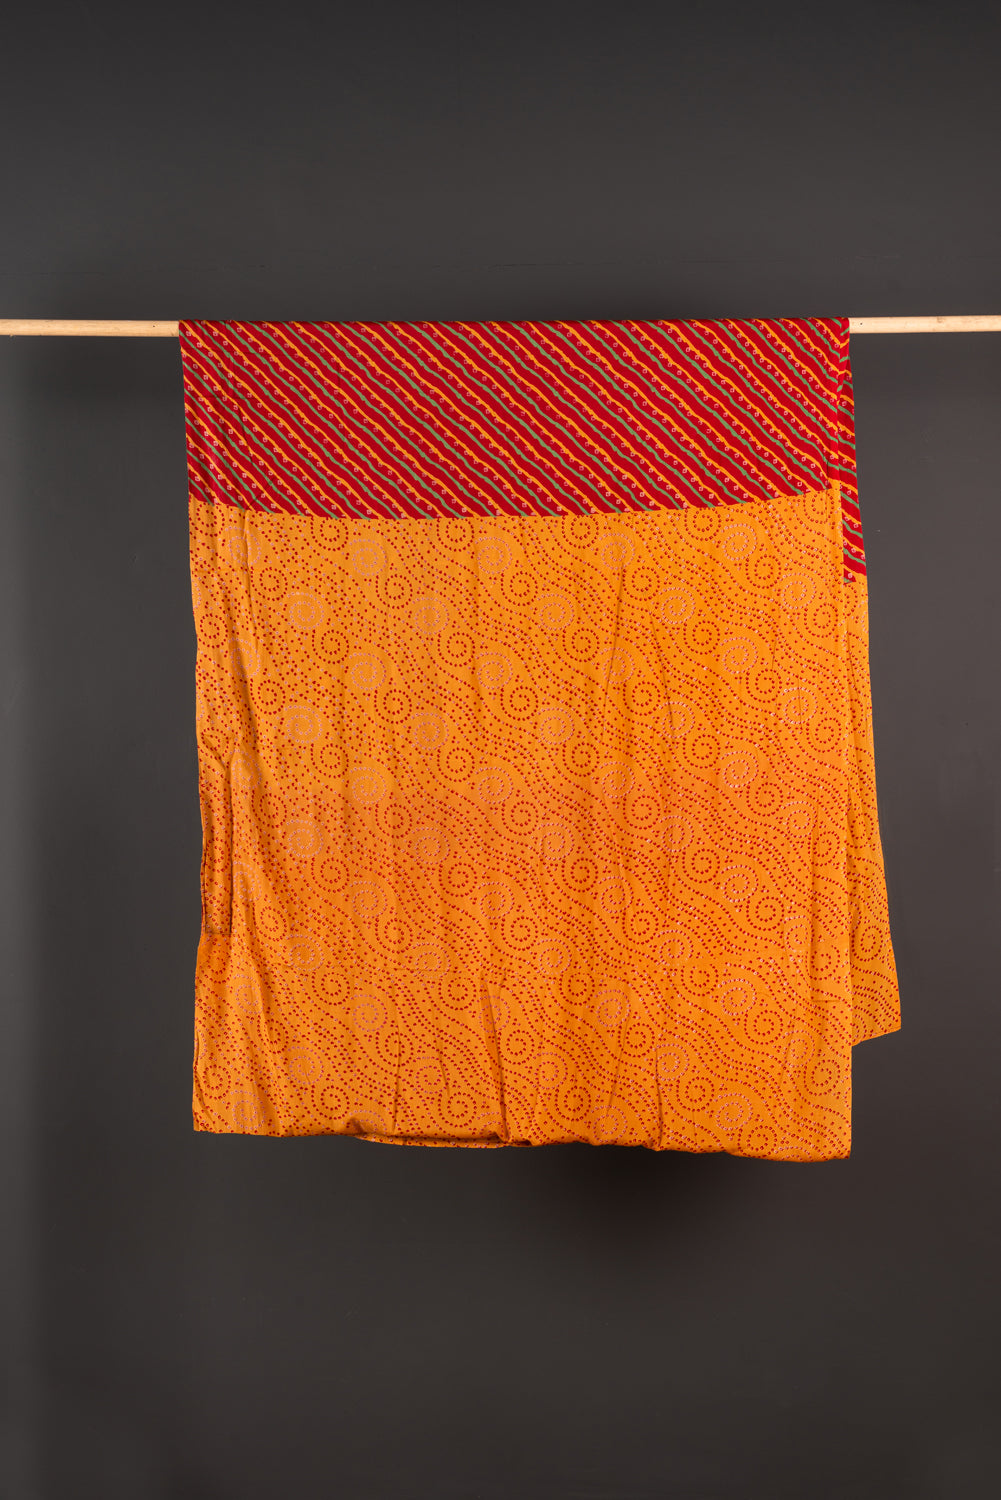 Vintage Rayon Sari - 5 Metres Long - 4413